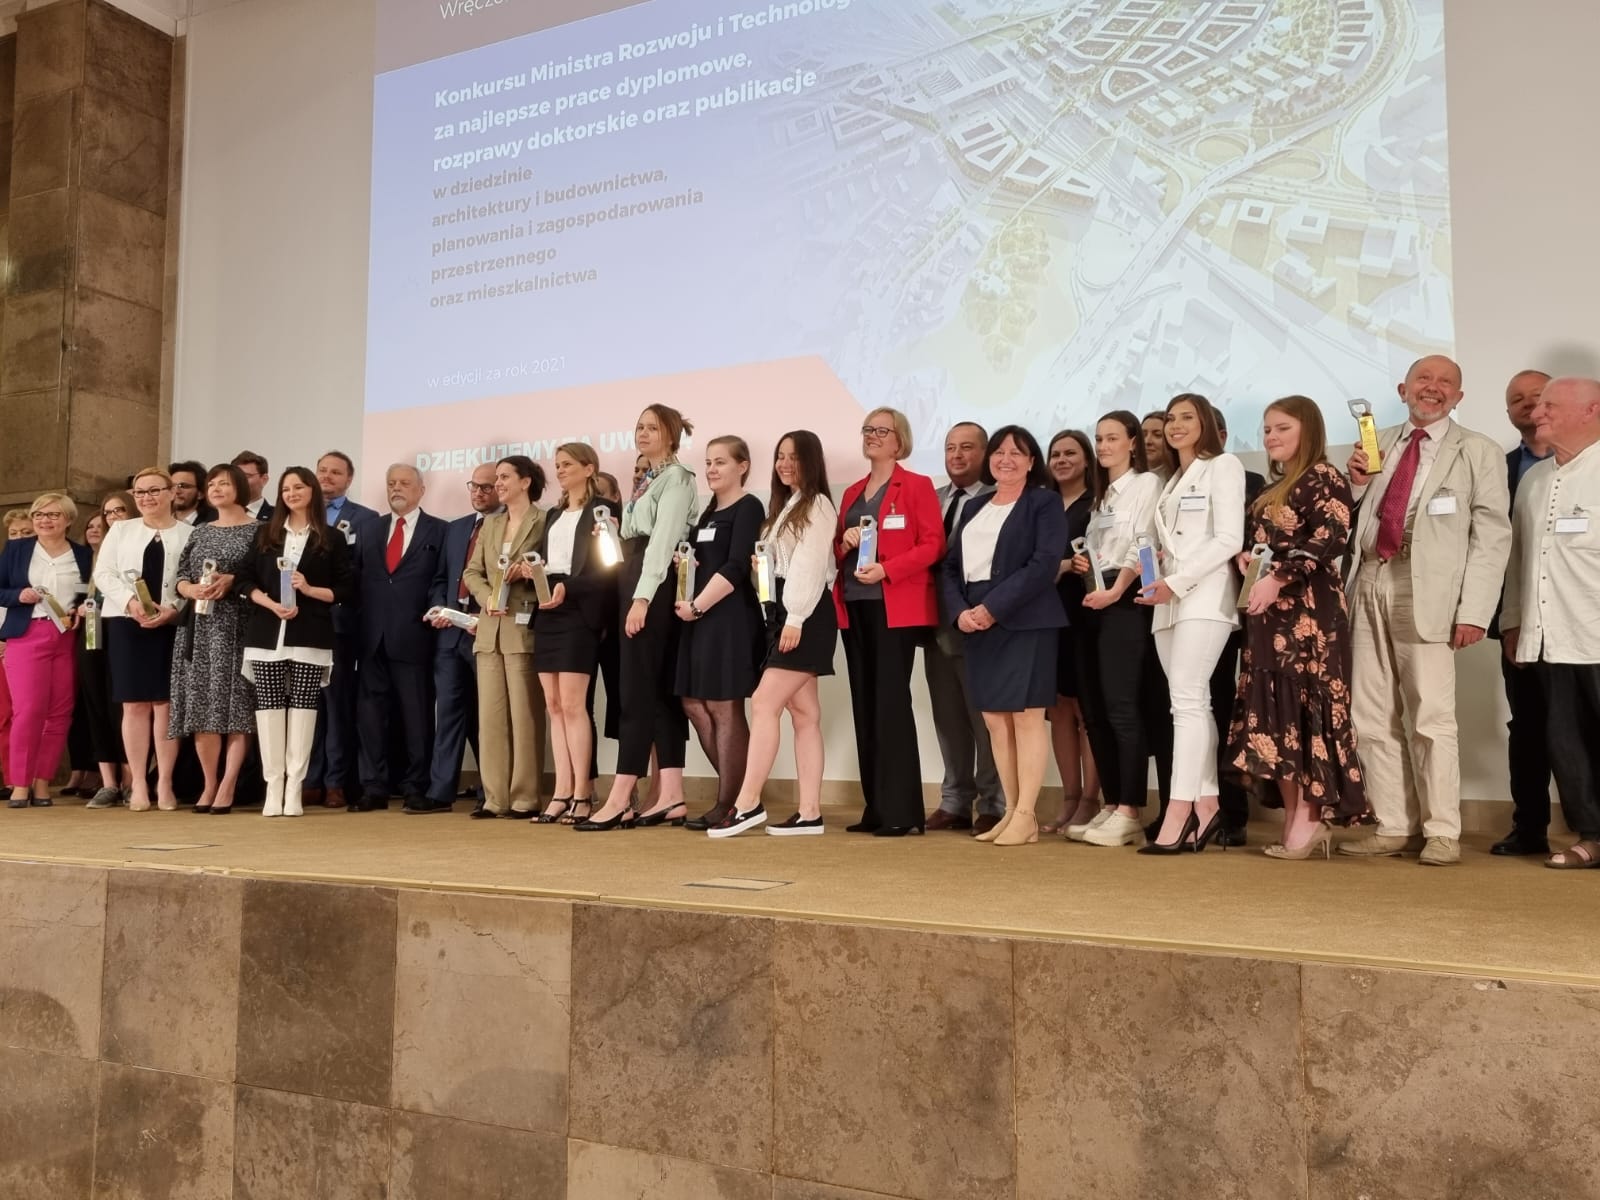 Zdjęcie grupowe uczestników uroczystości wręczenia nagród laureatom konkursu Ministra Rozwoju i Technologii